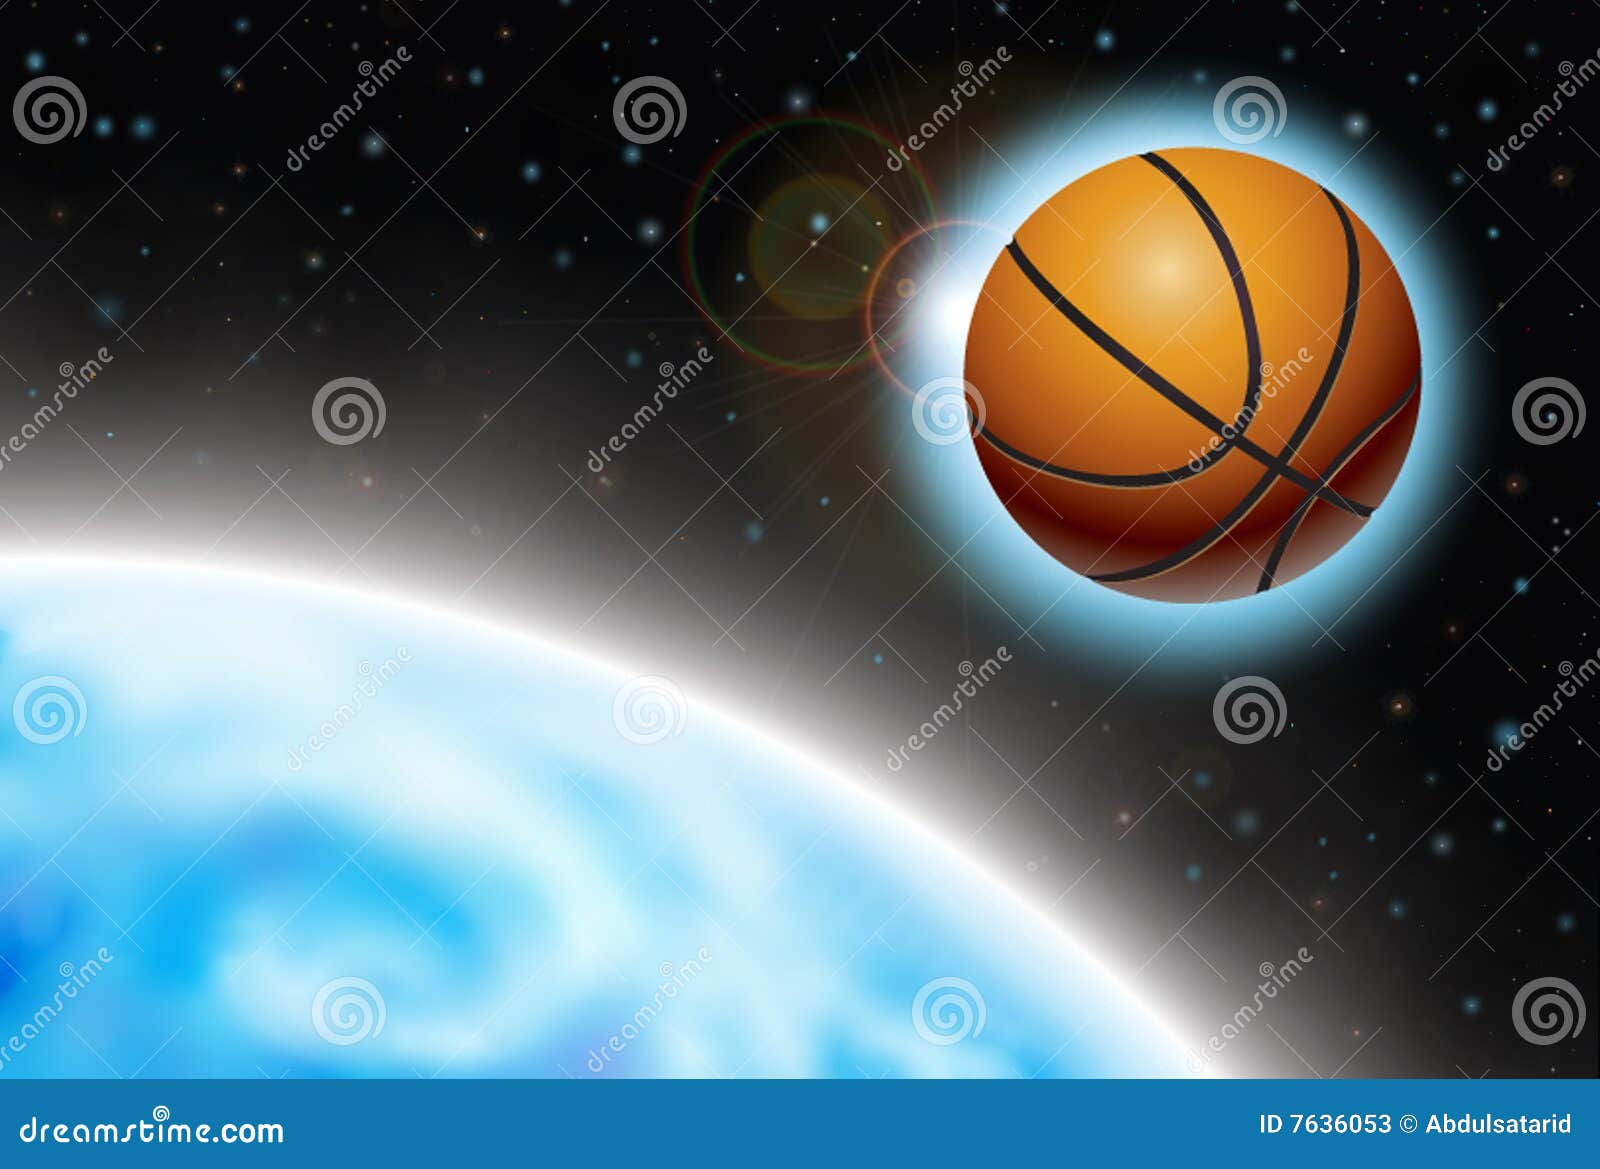 Basketball Wallpaper  NawPic